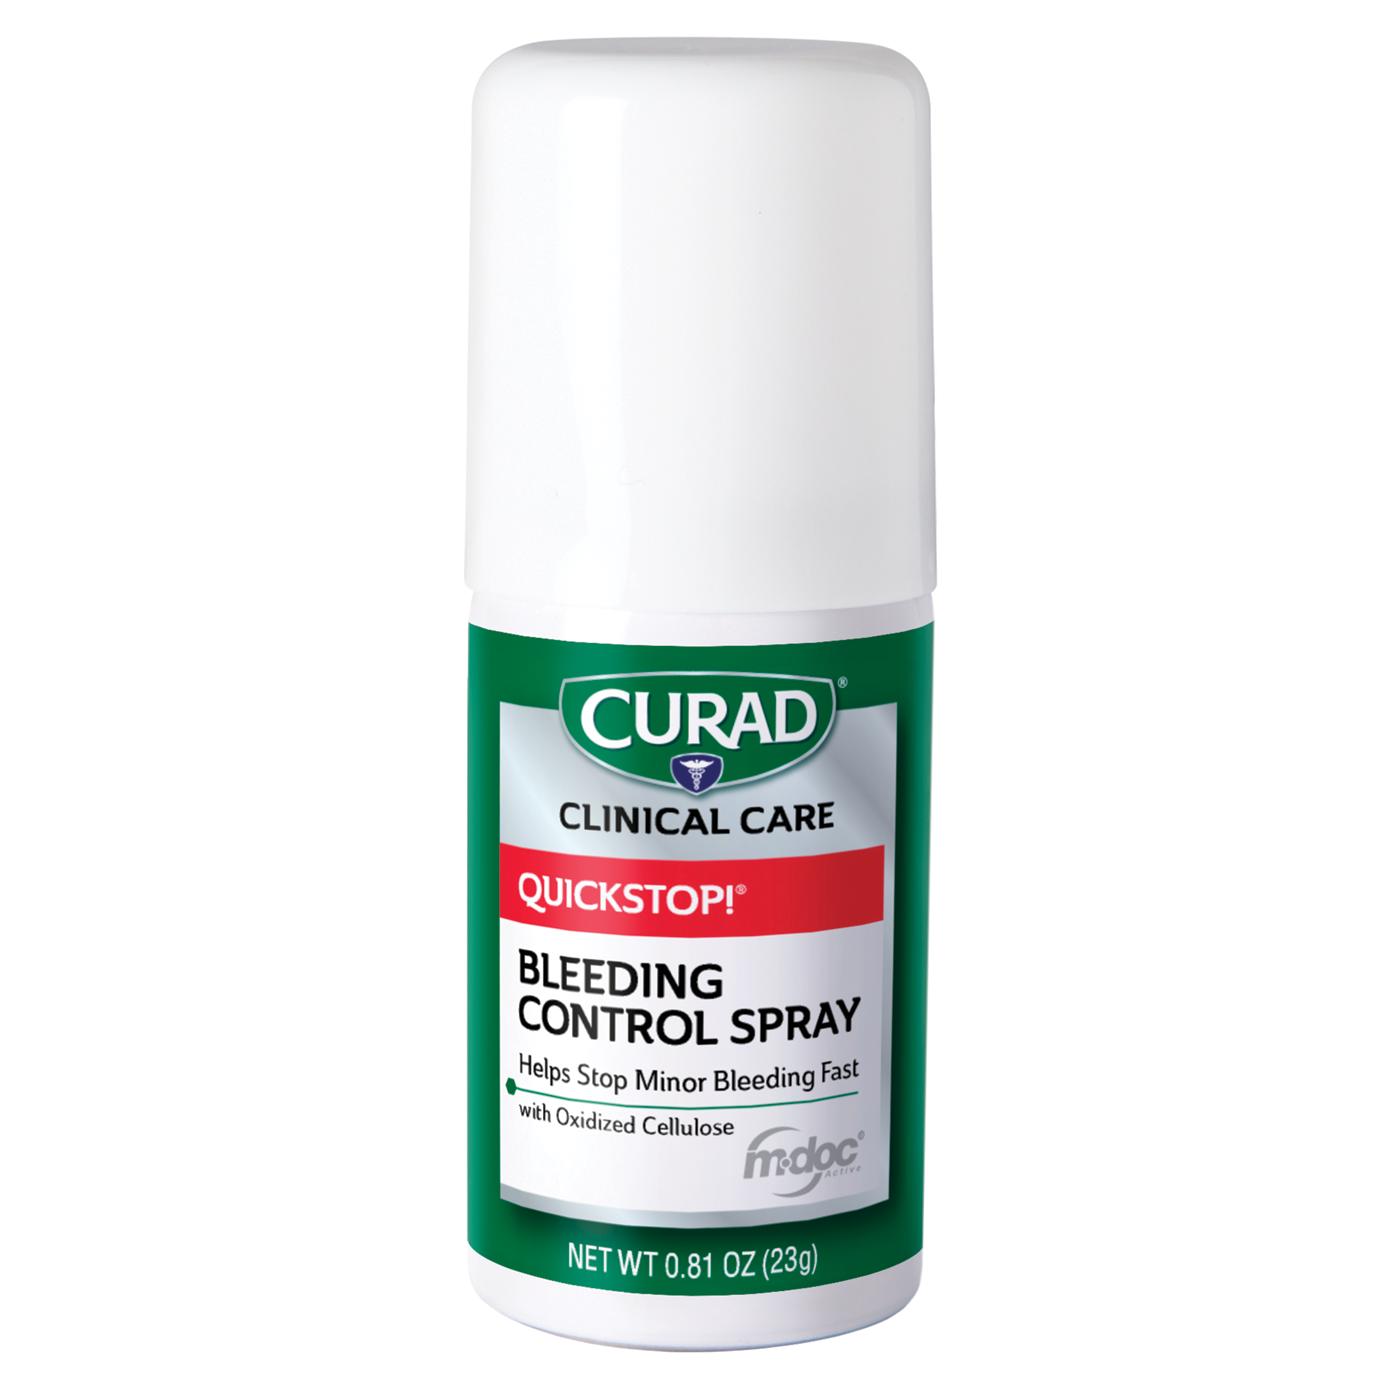 Curad Quickstop Bleeding Control Spray; image 1 of 2